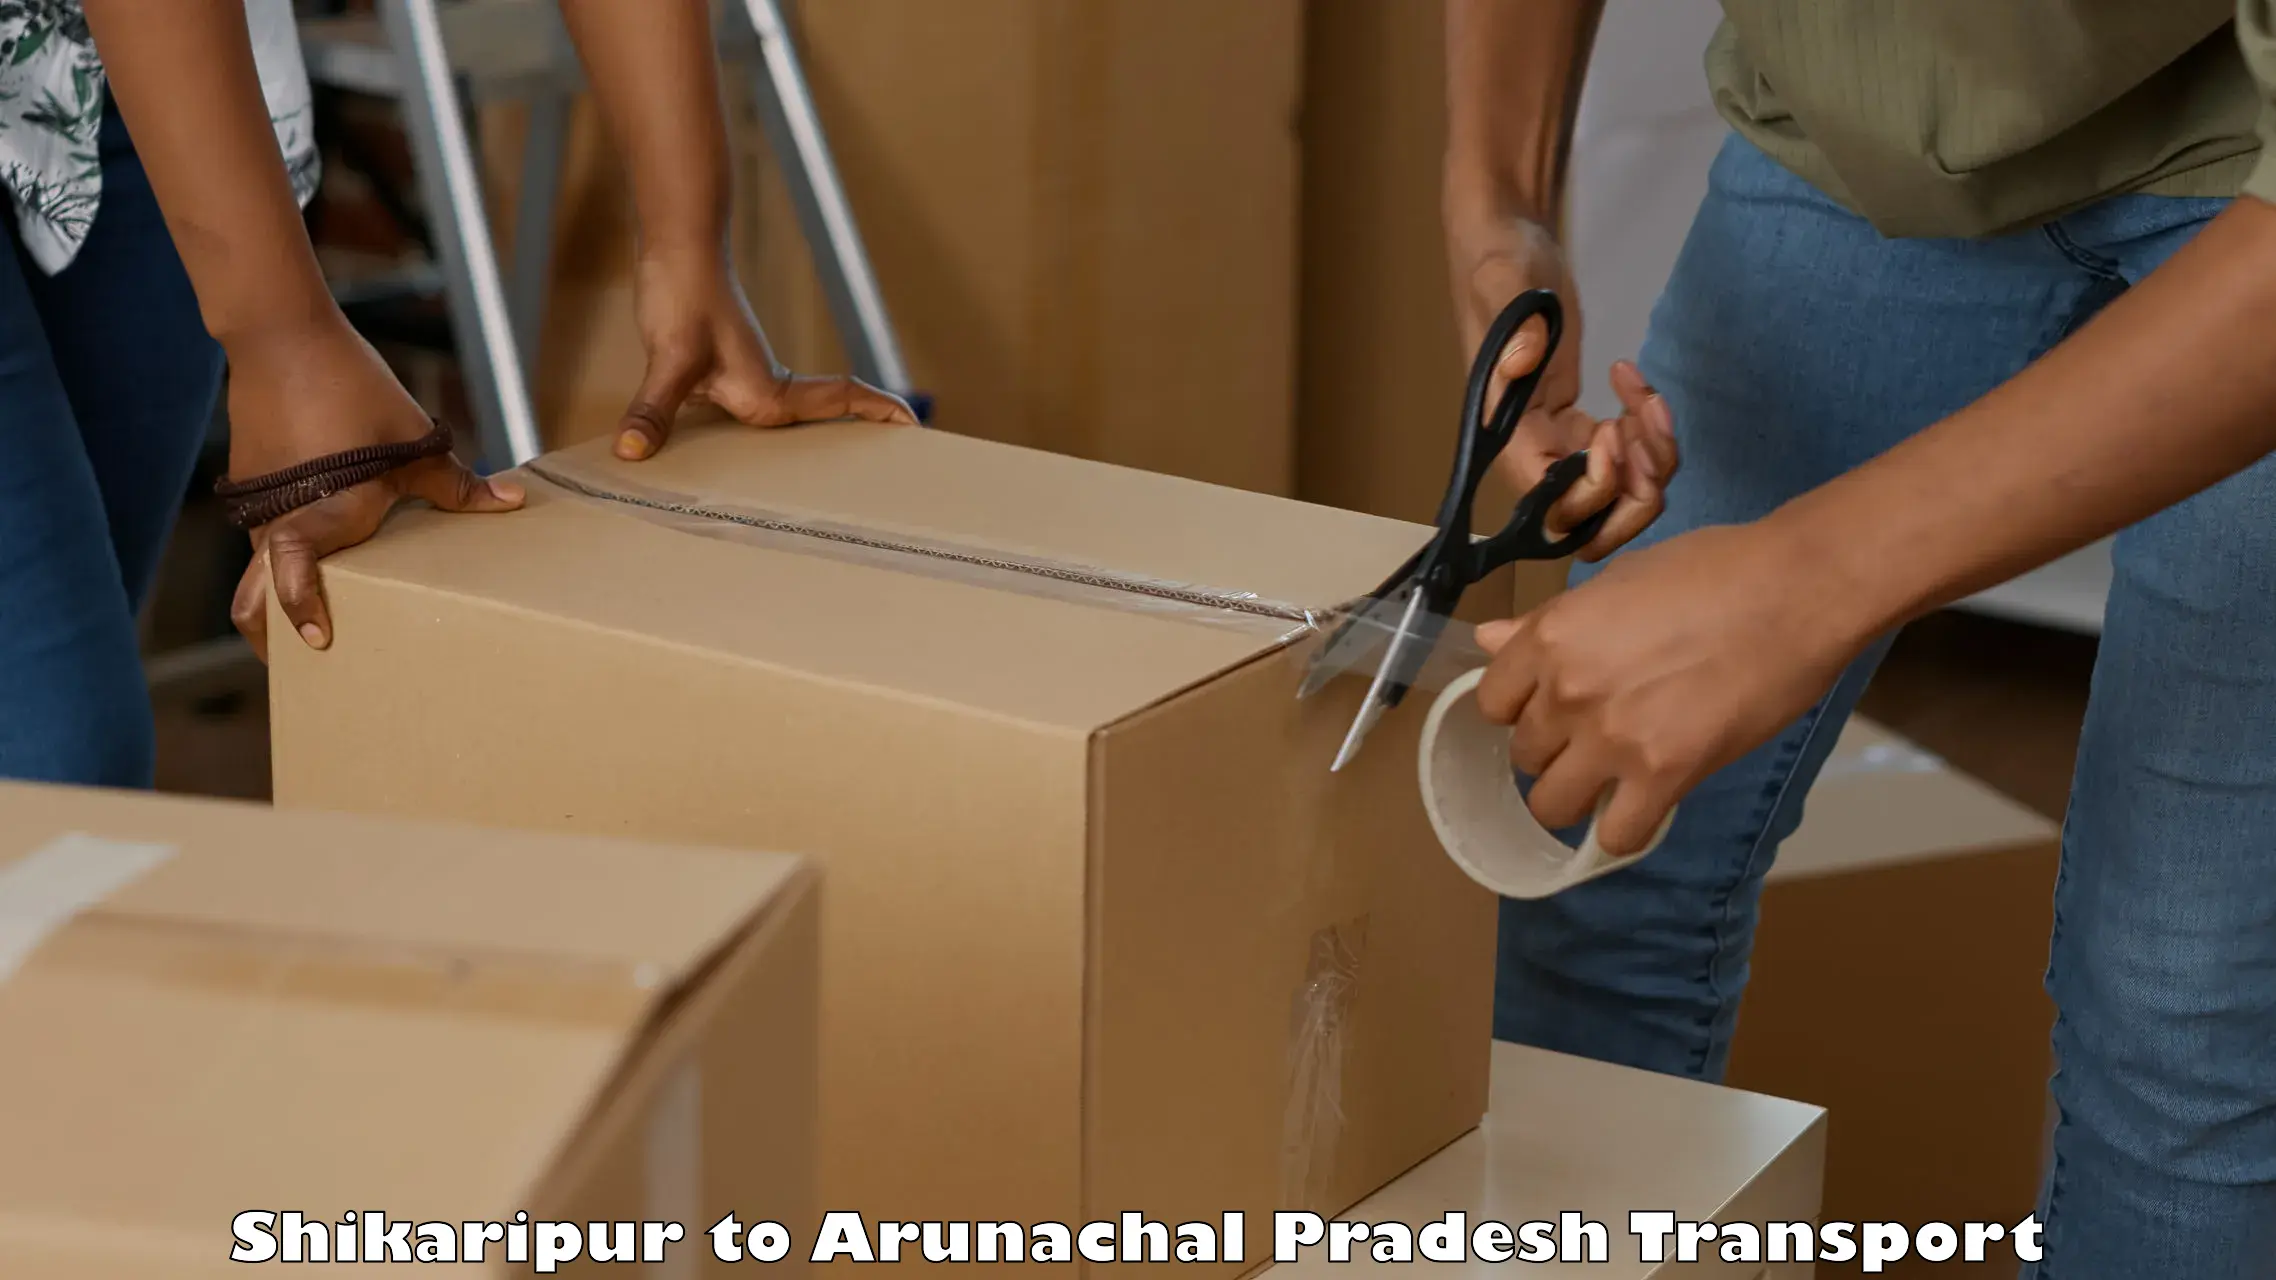 Luggage transport services Shikaripur to Arunachal Pradesh